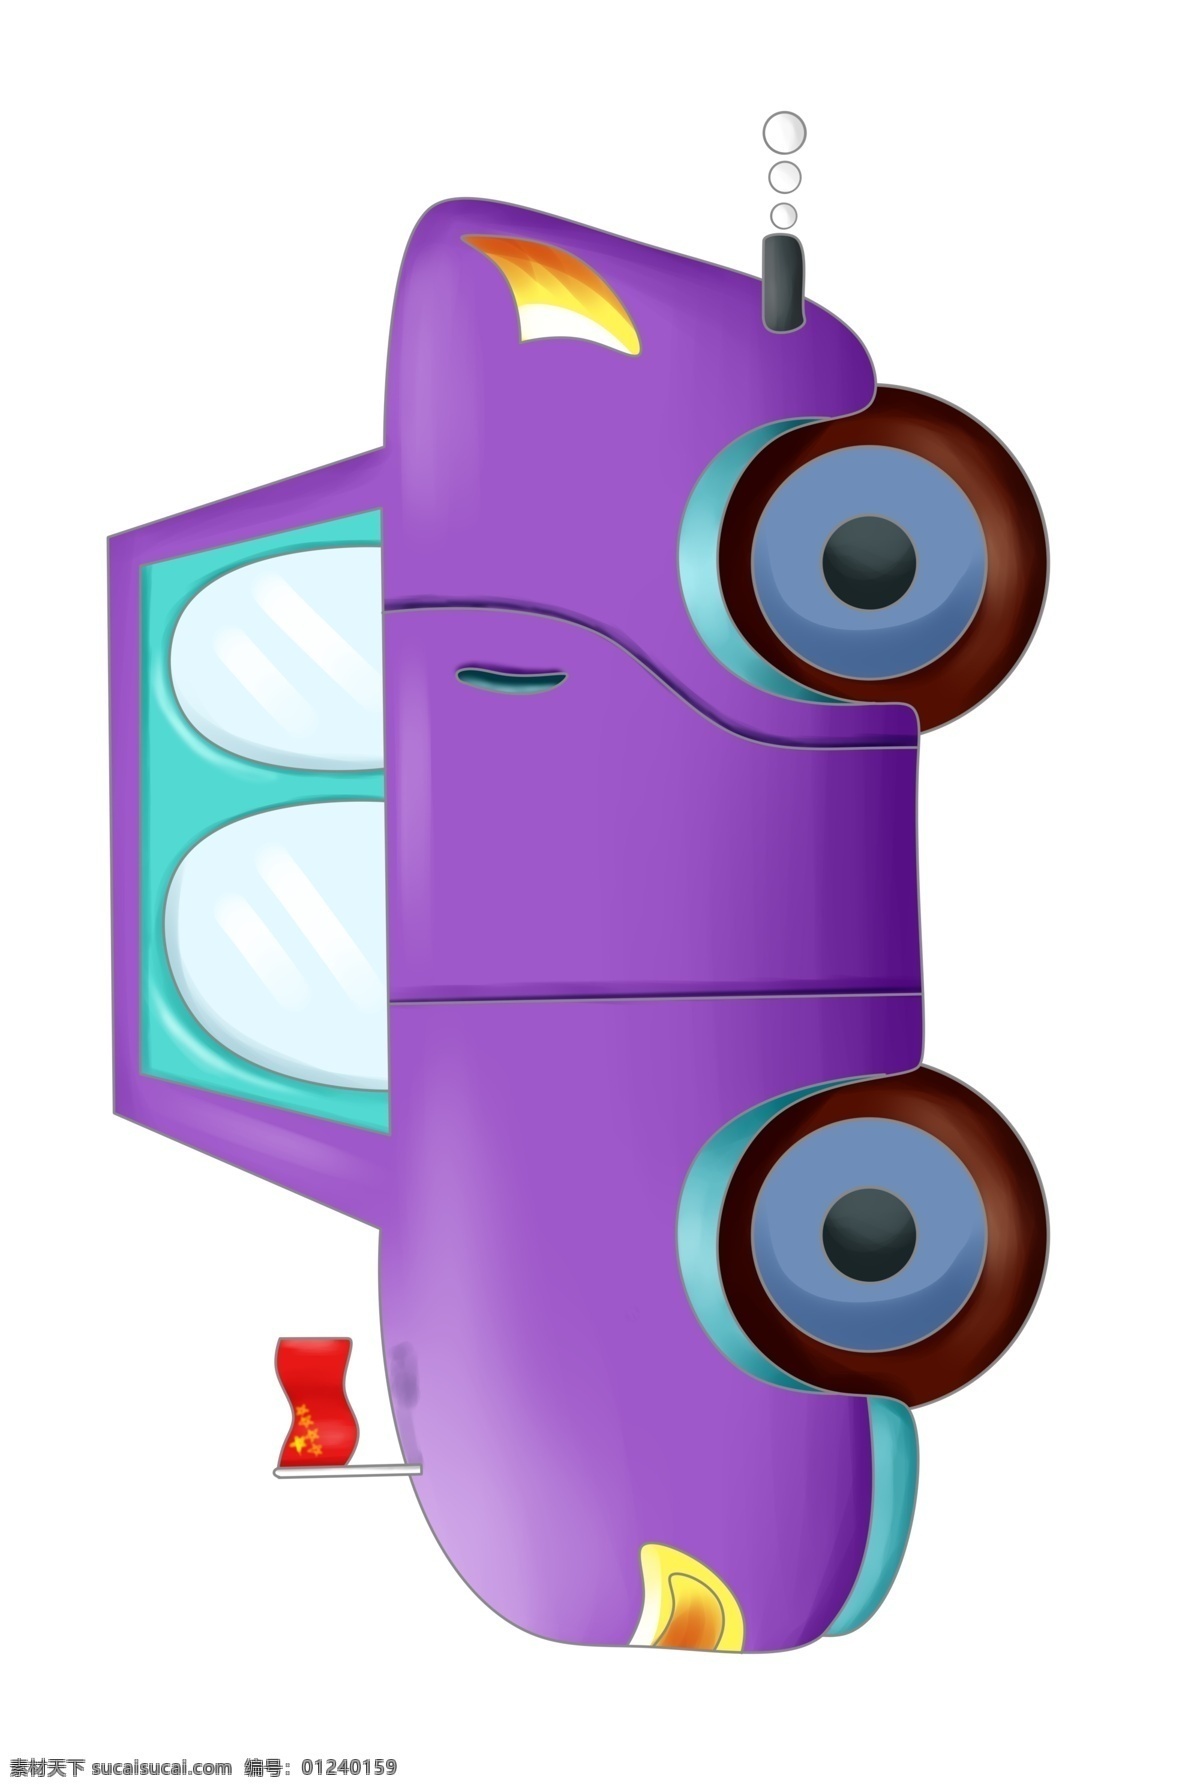 紫色 汽车装饰 插画 紫色的汽车 漂亮的汽车 交通汽车 创意汽车 立体汽车 卡通汽车 载客汽车